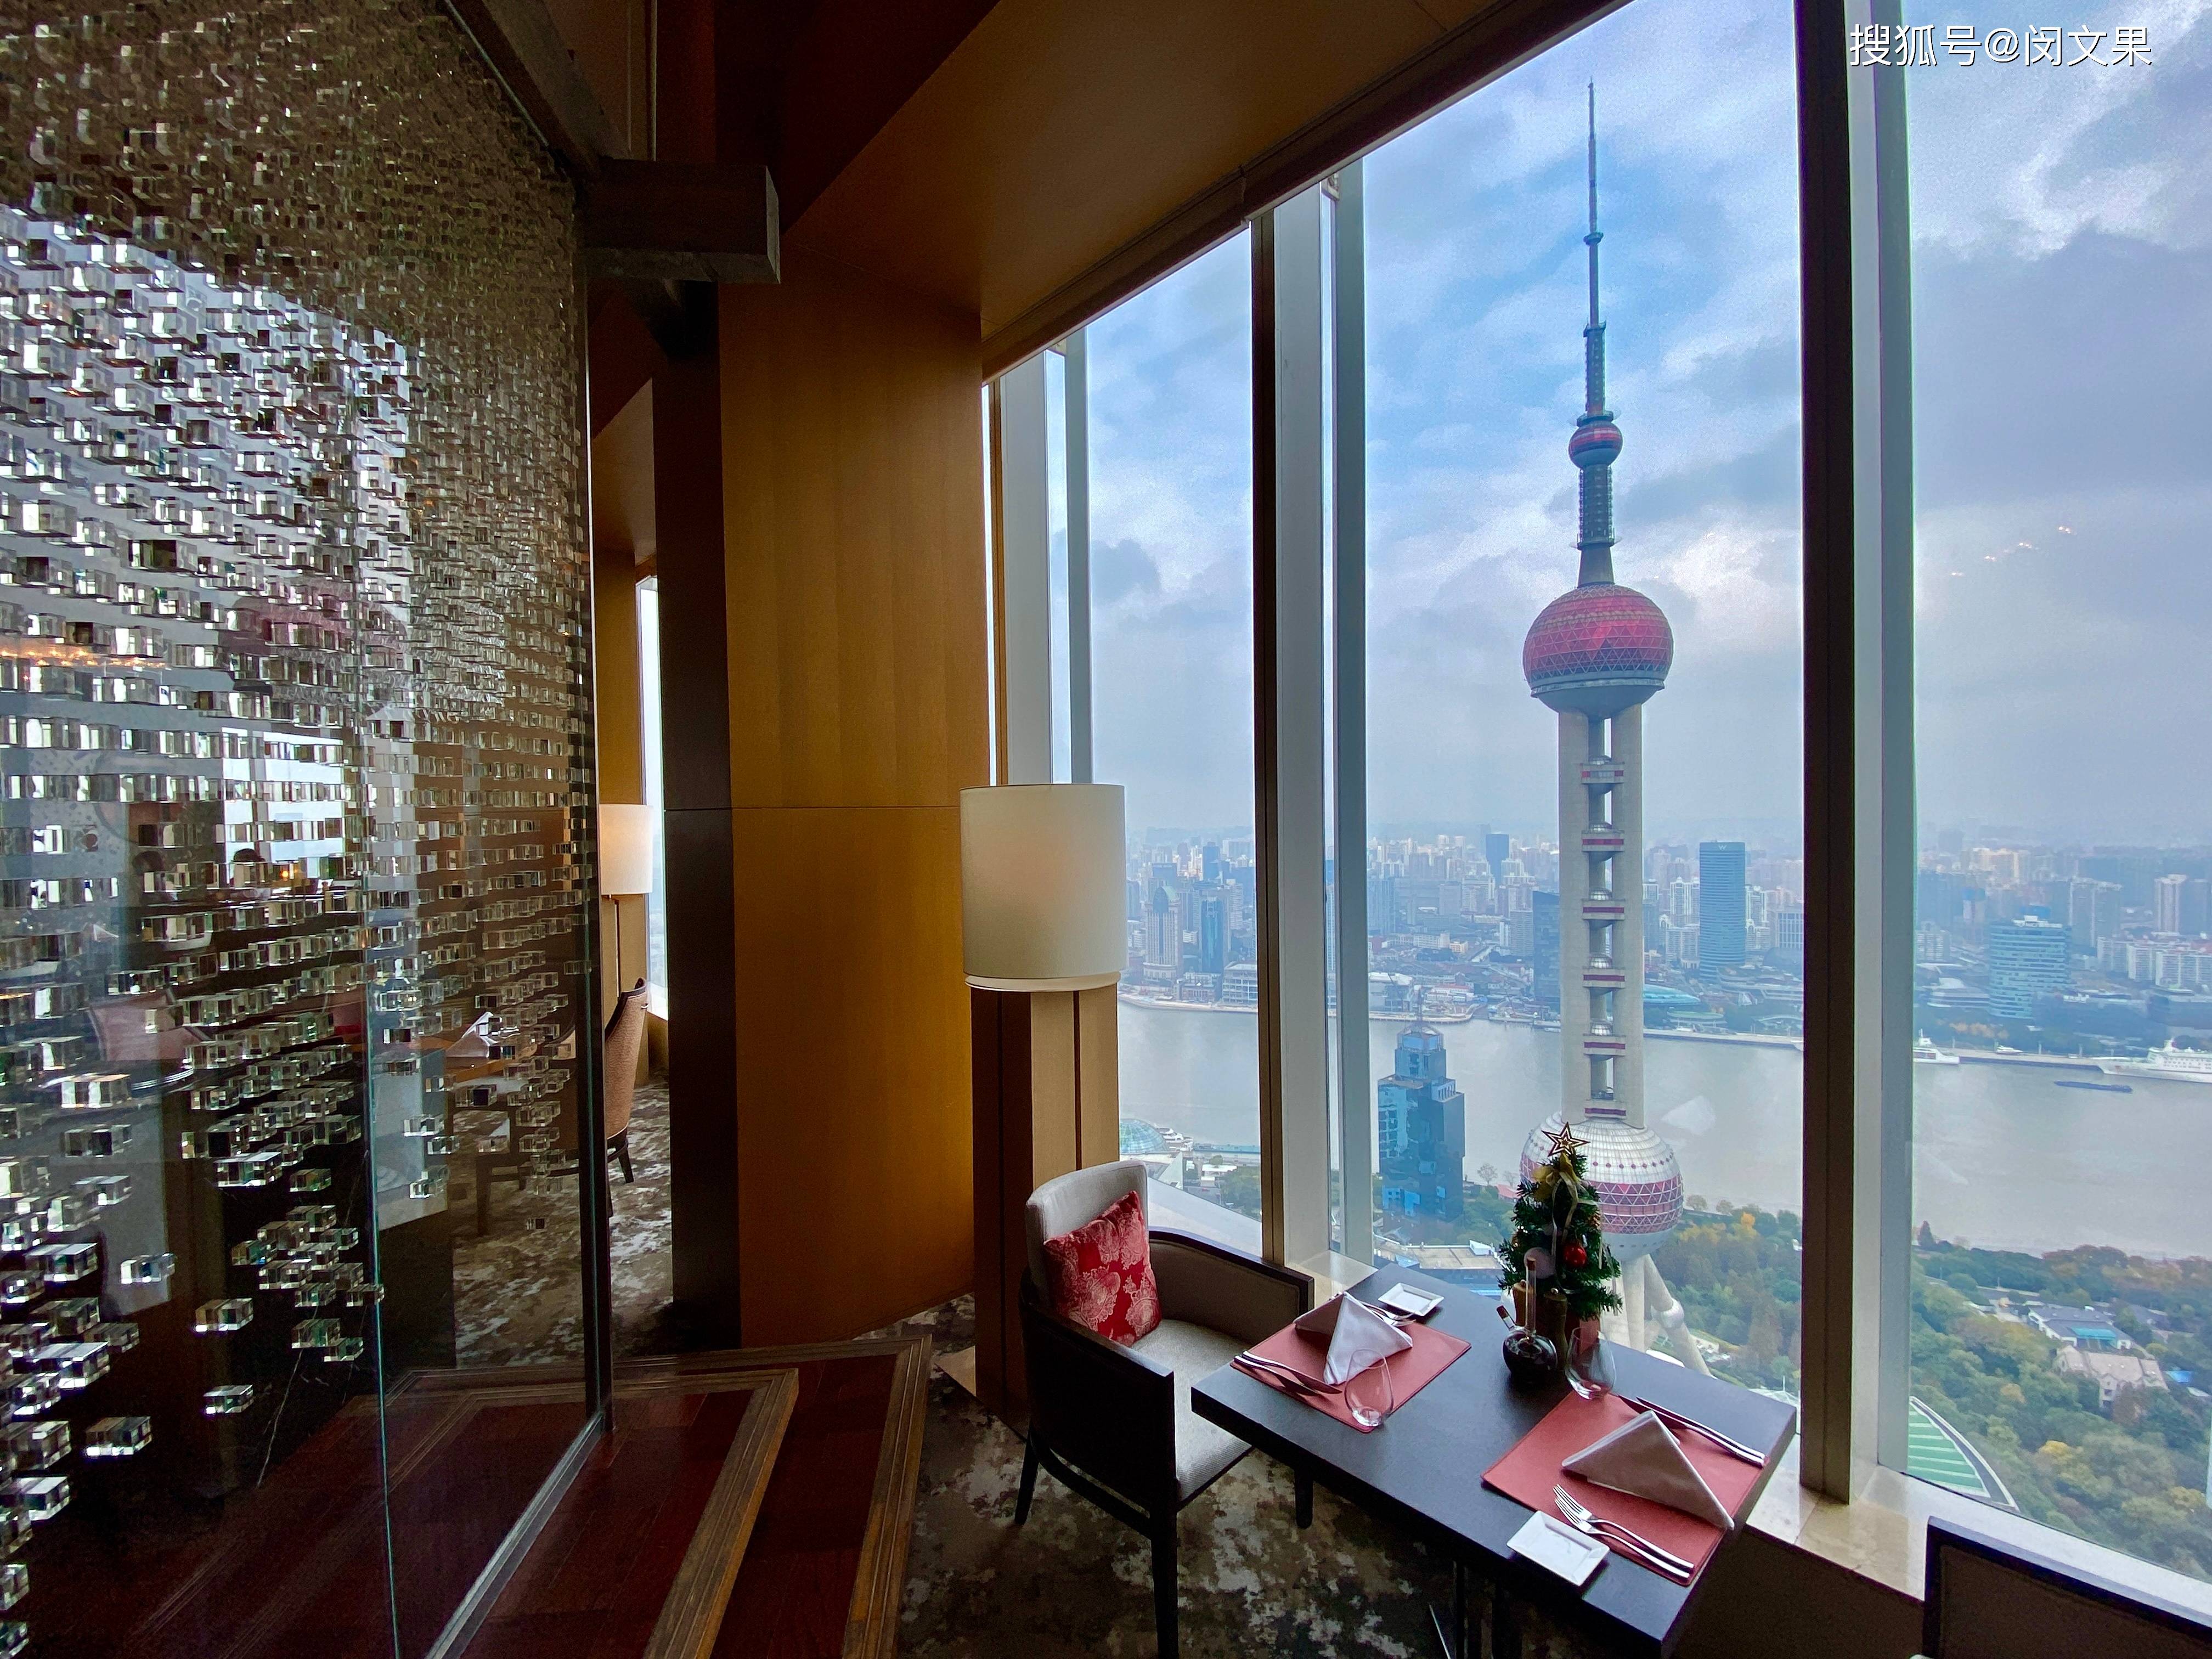 原创天际温馨堡垒,处处有收纳魔都景致的窗户|上海浦东丽思卡尔顿酒店